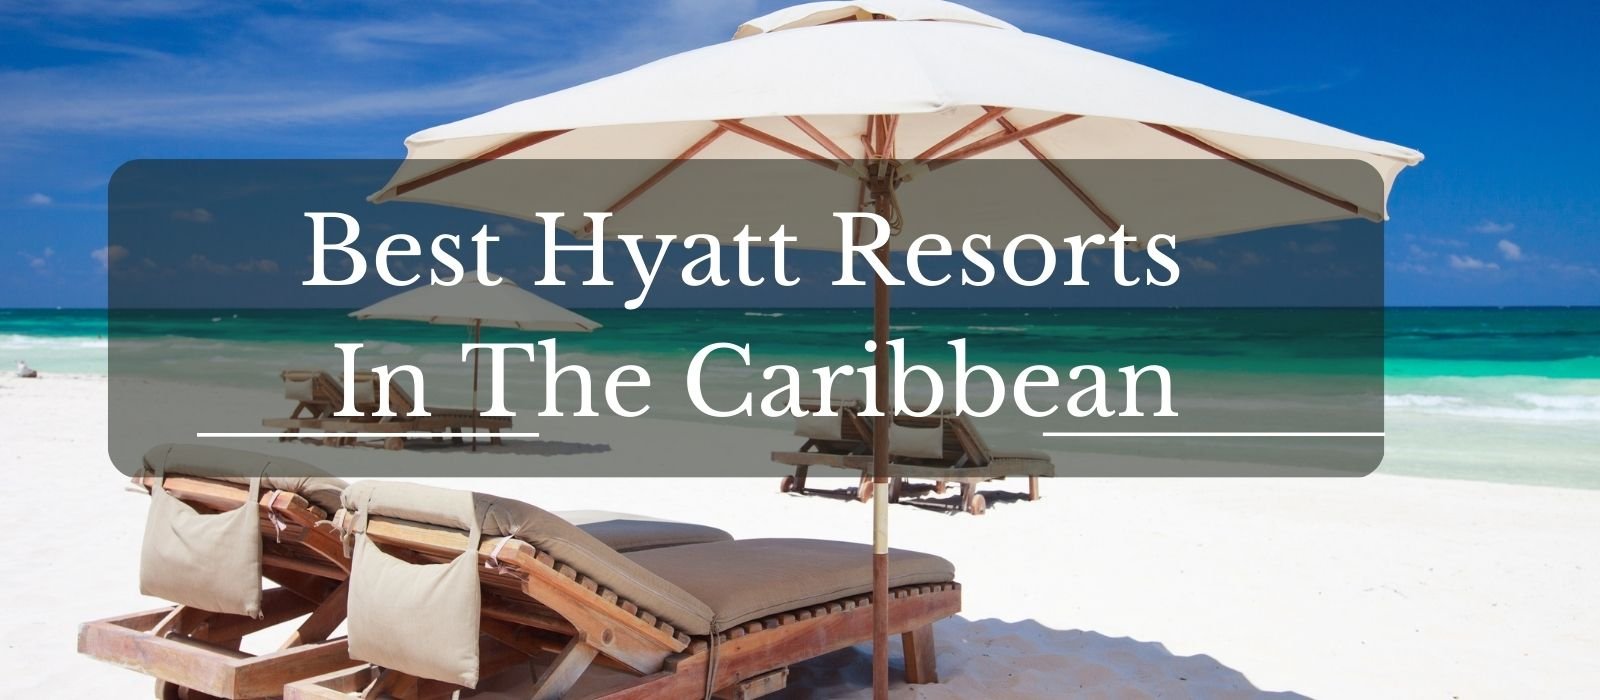 Best Hyatt Resorts in the Caribbean